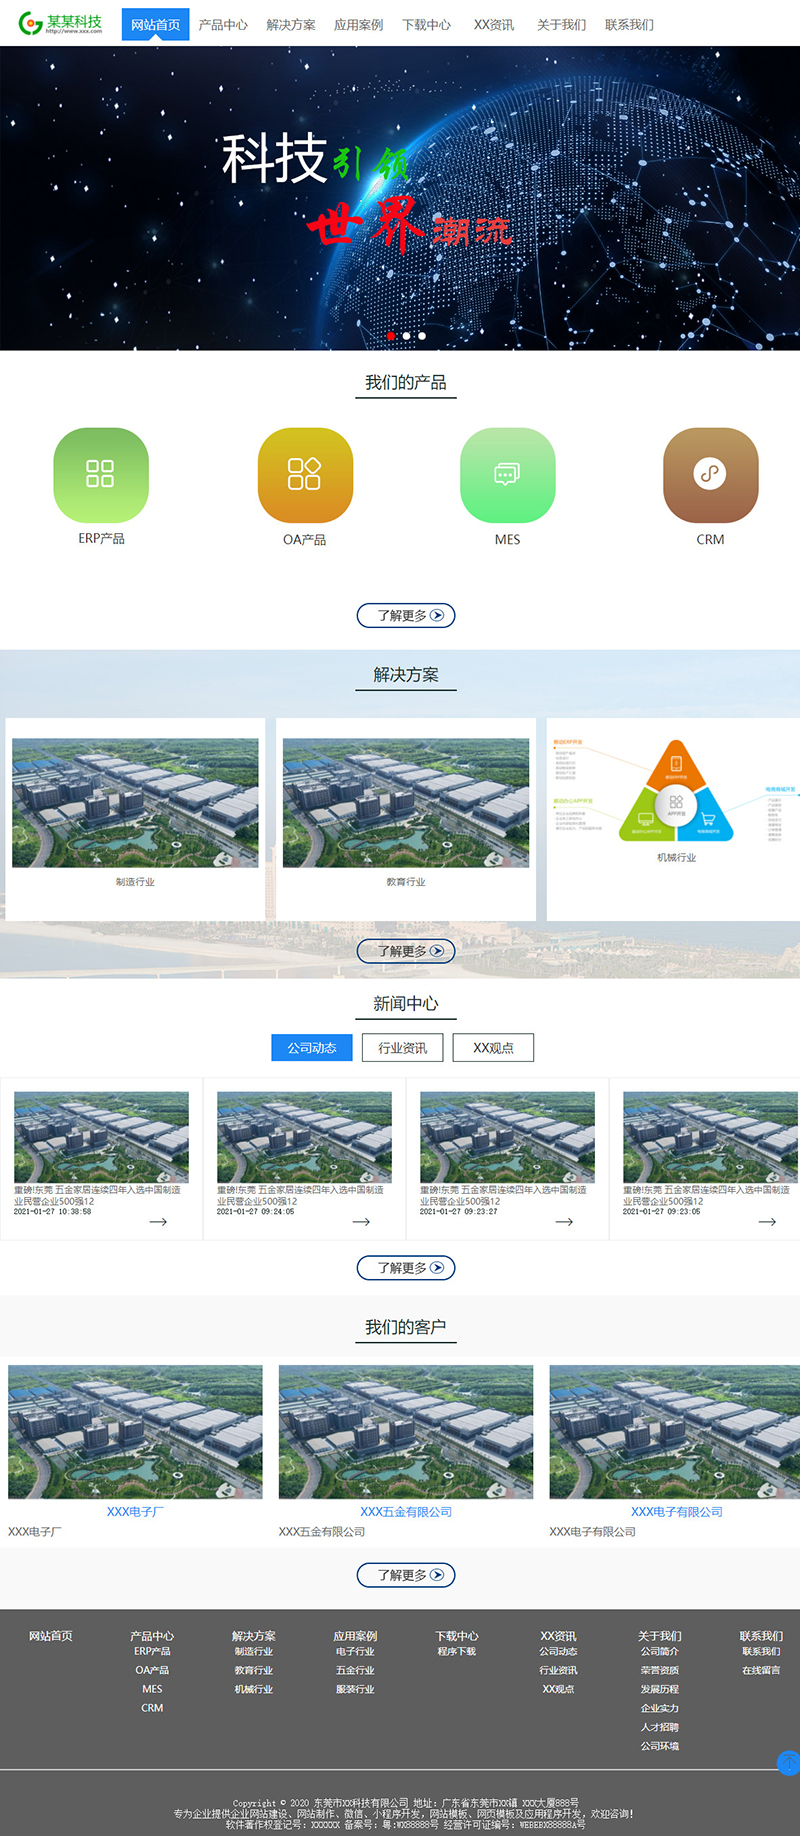 深圳宇行科技-软件/网络公司通用响应式模板网站设计模板